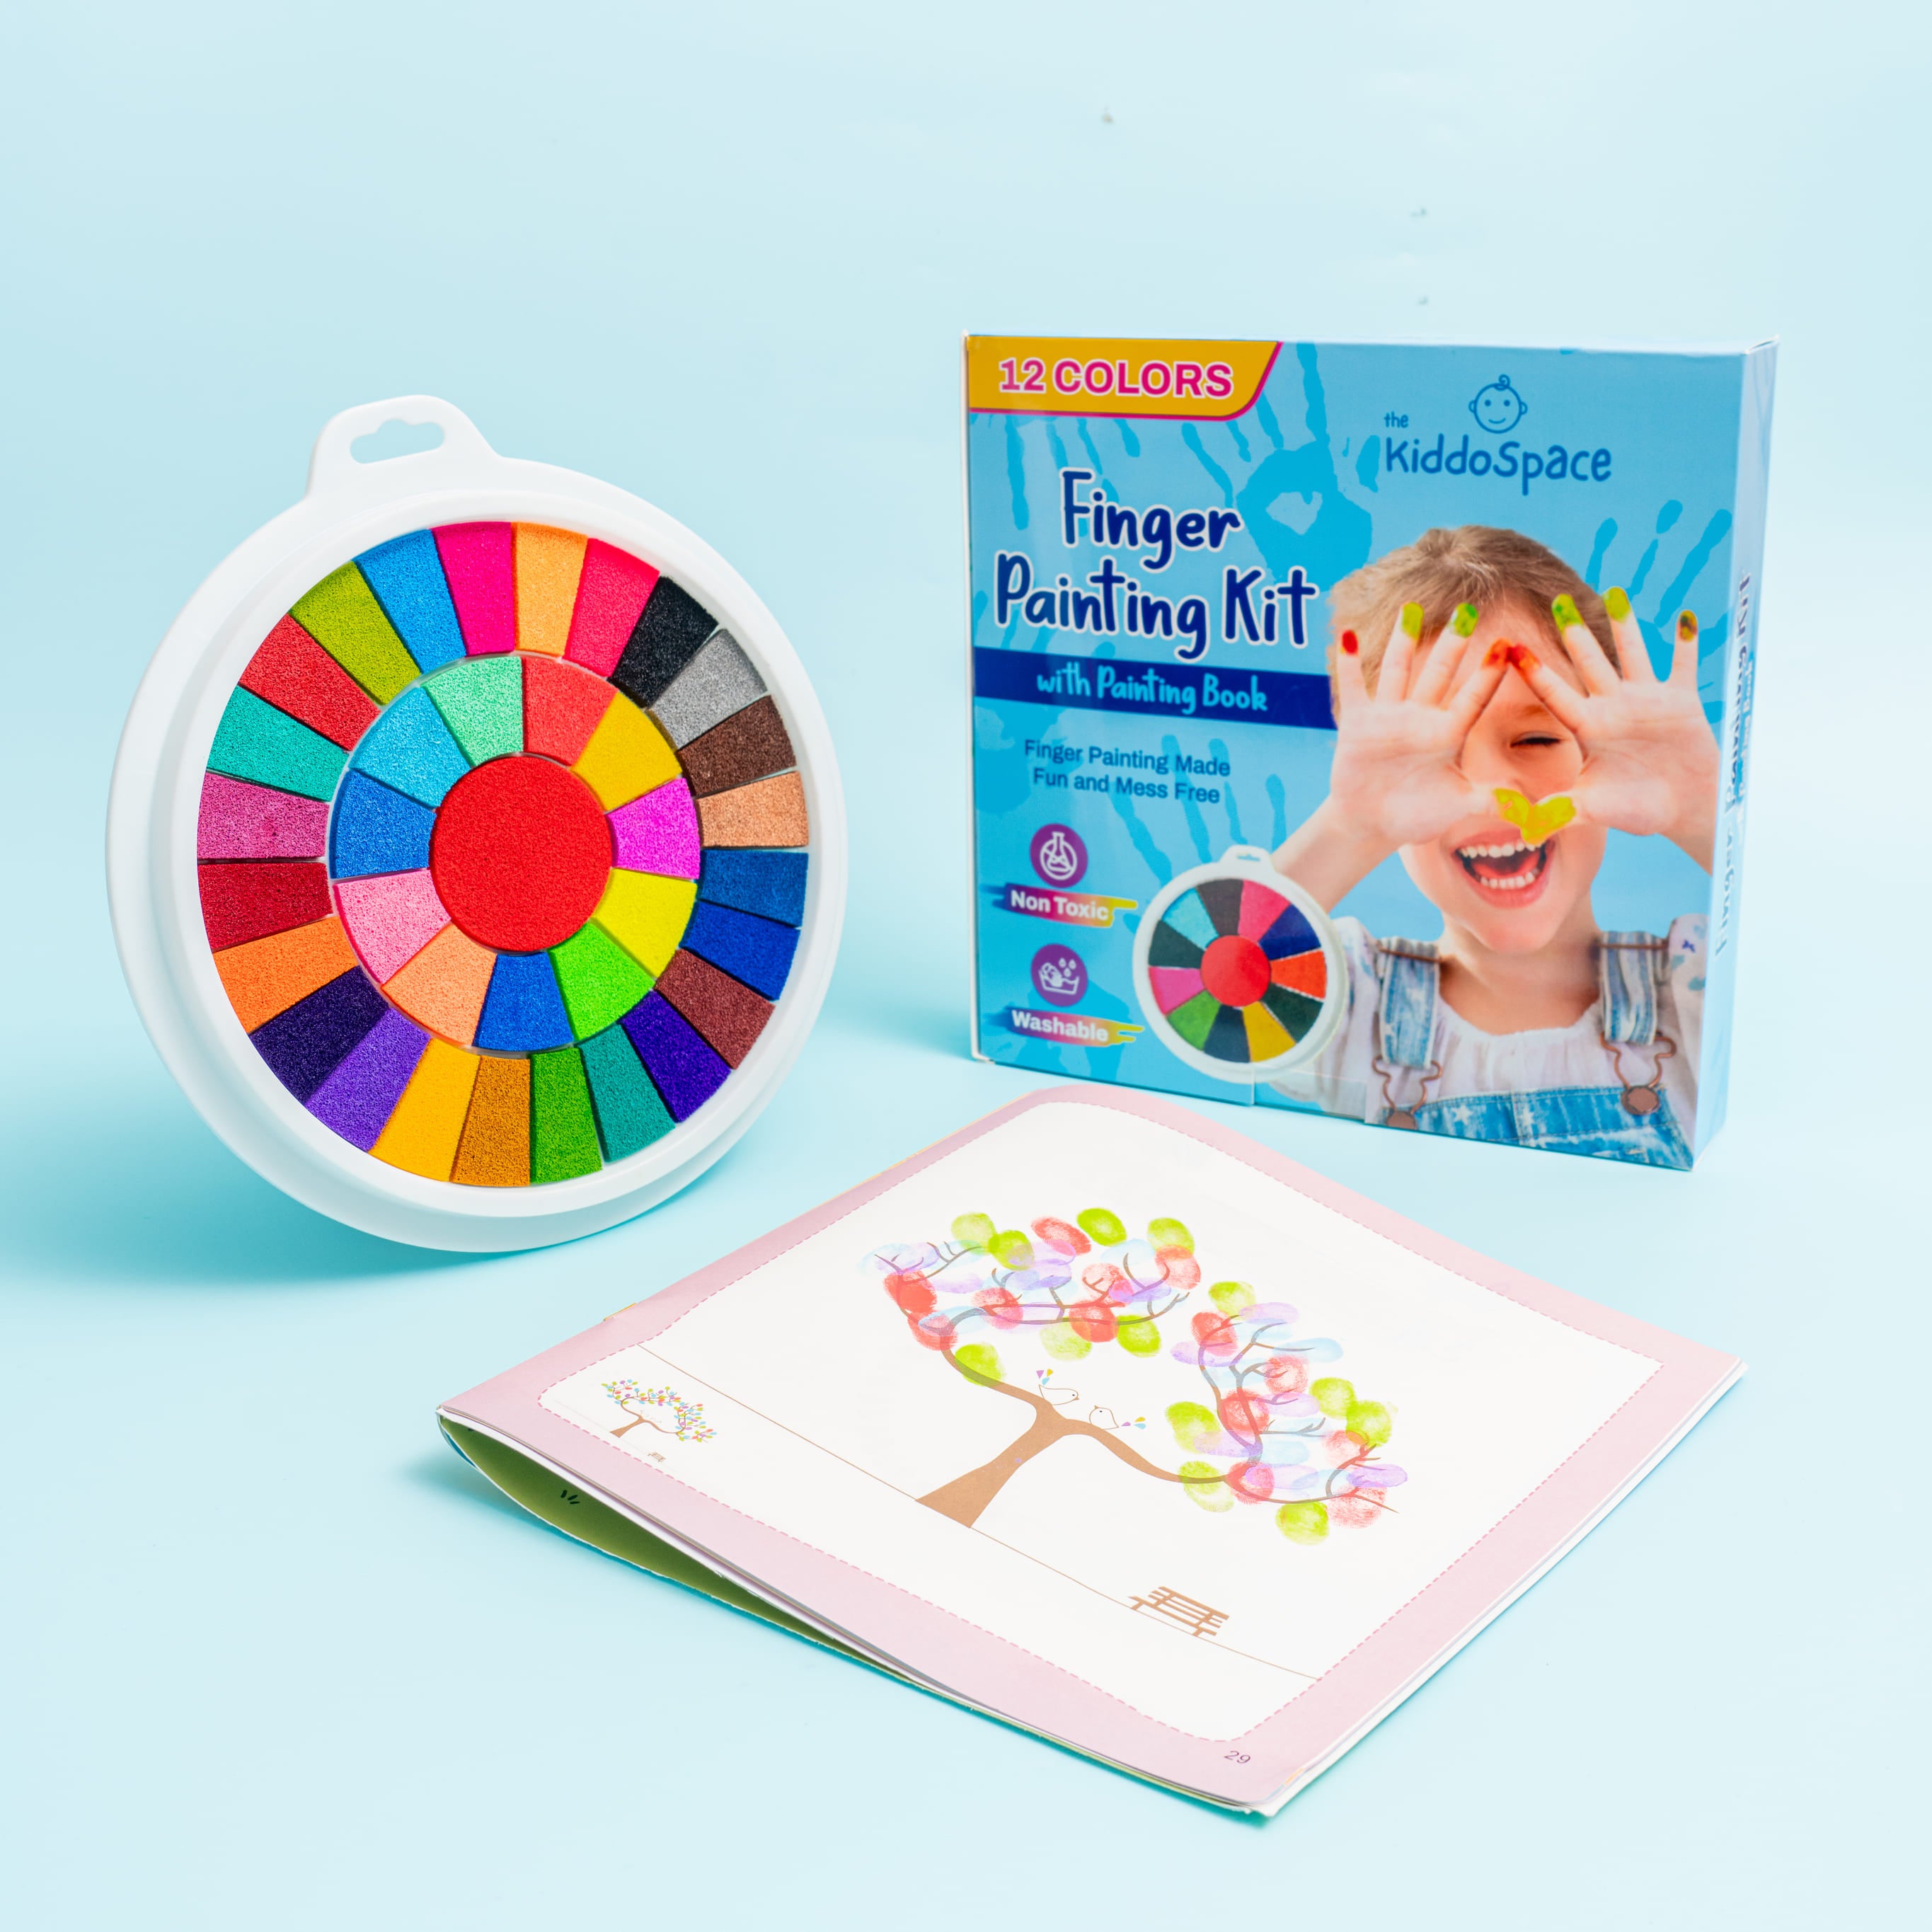 Kiddospace’s Kit di pittura con le dita (36 colori)